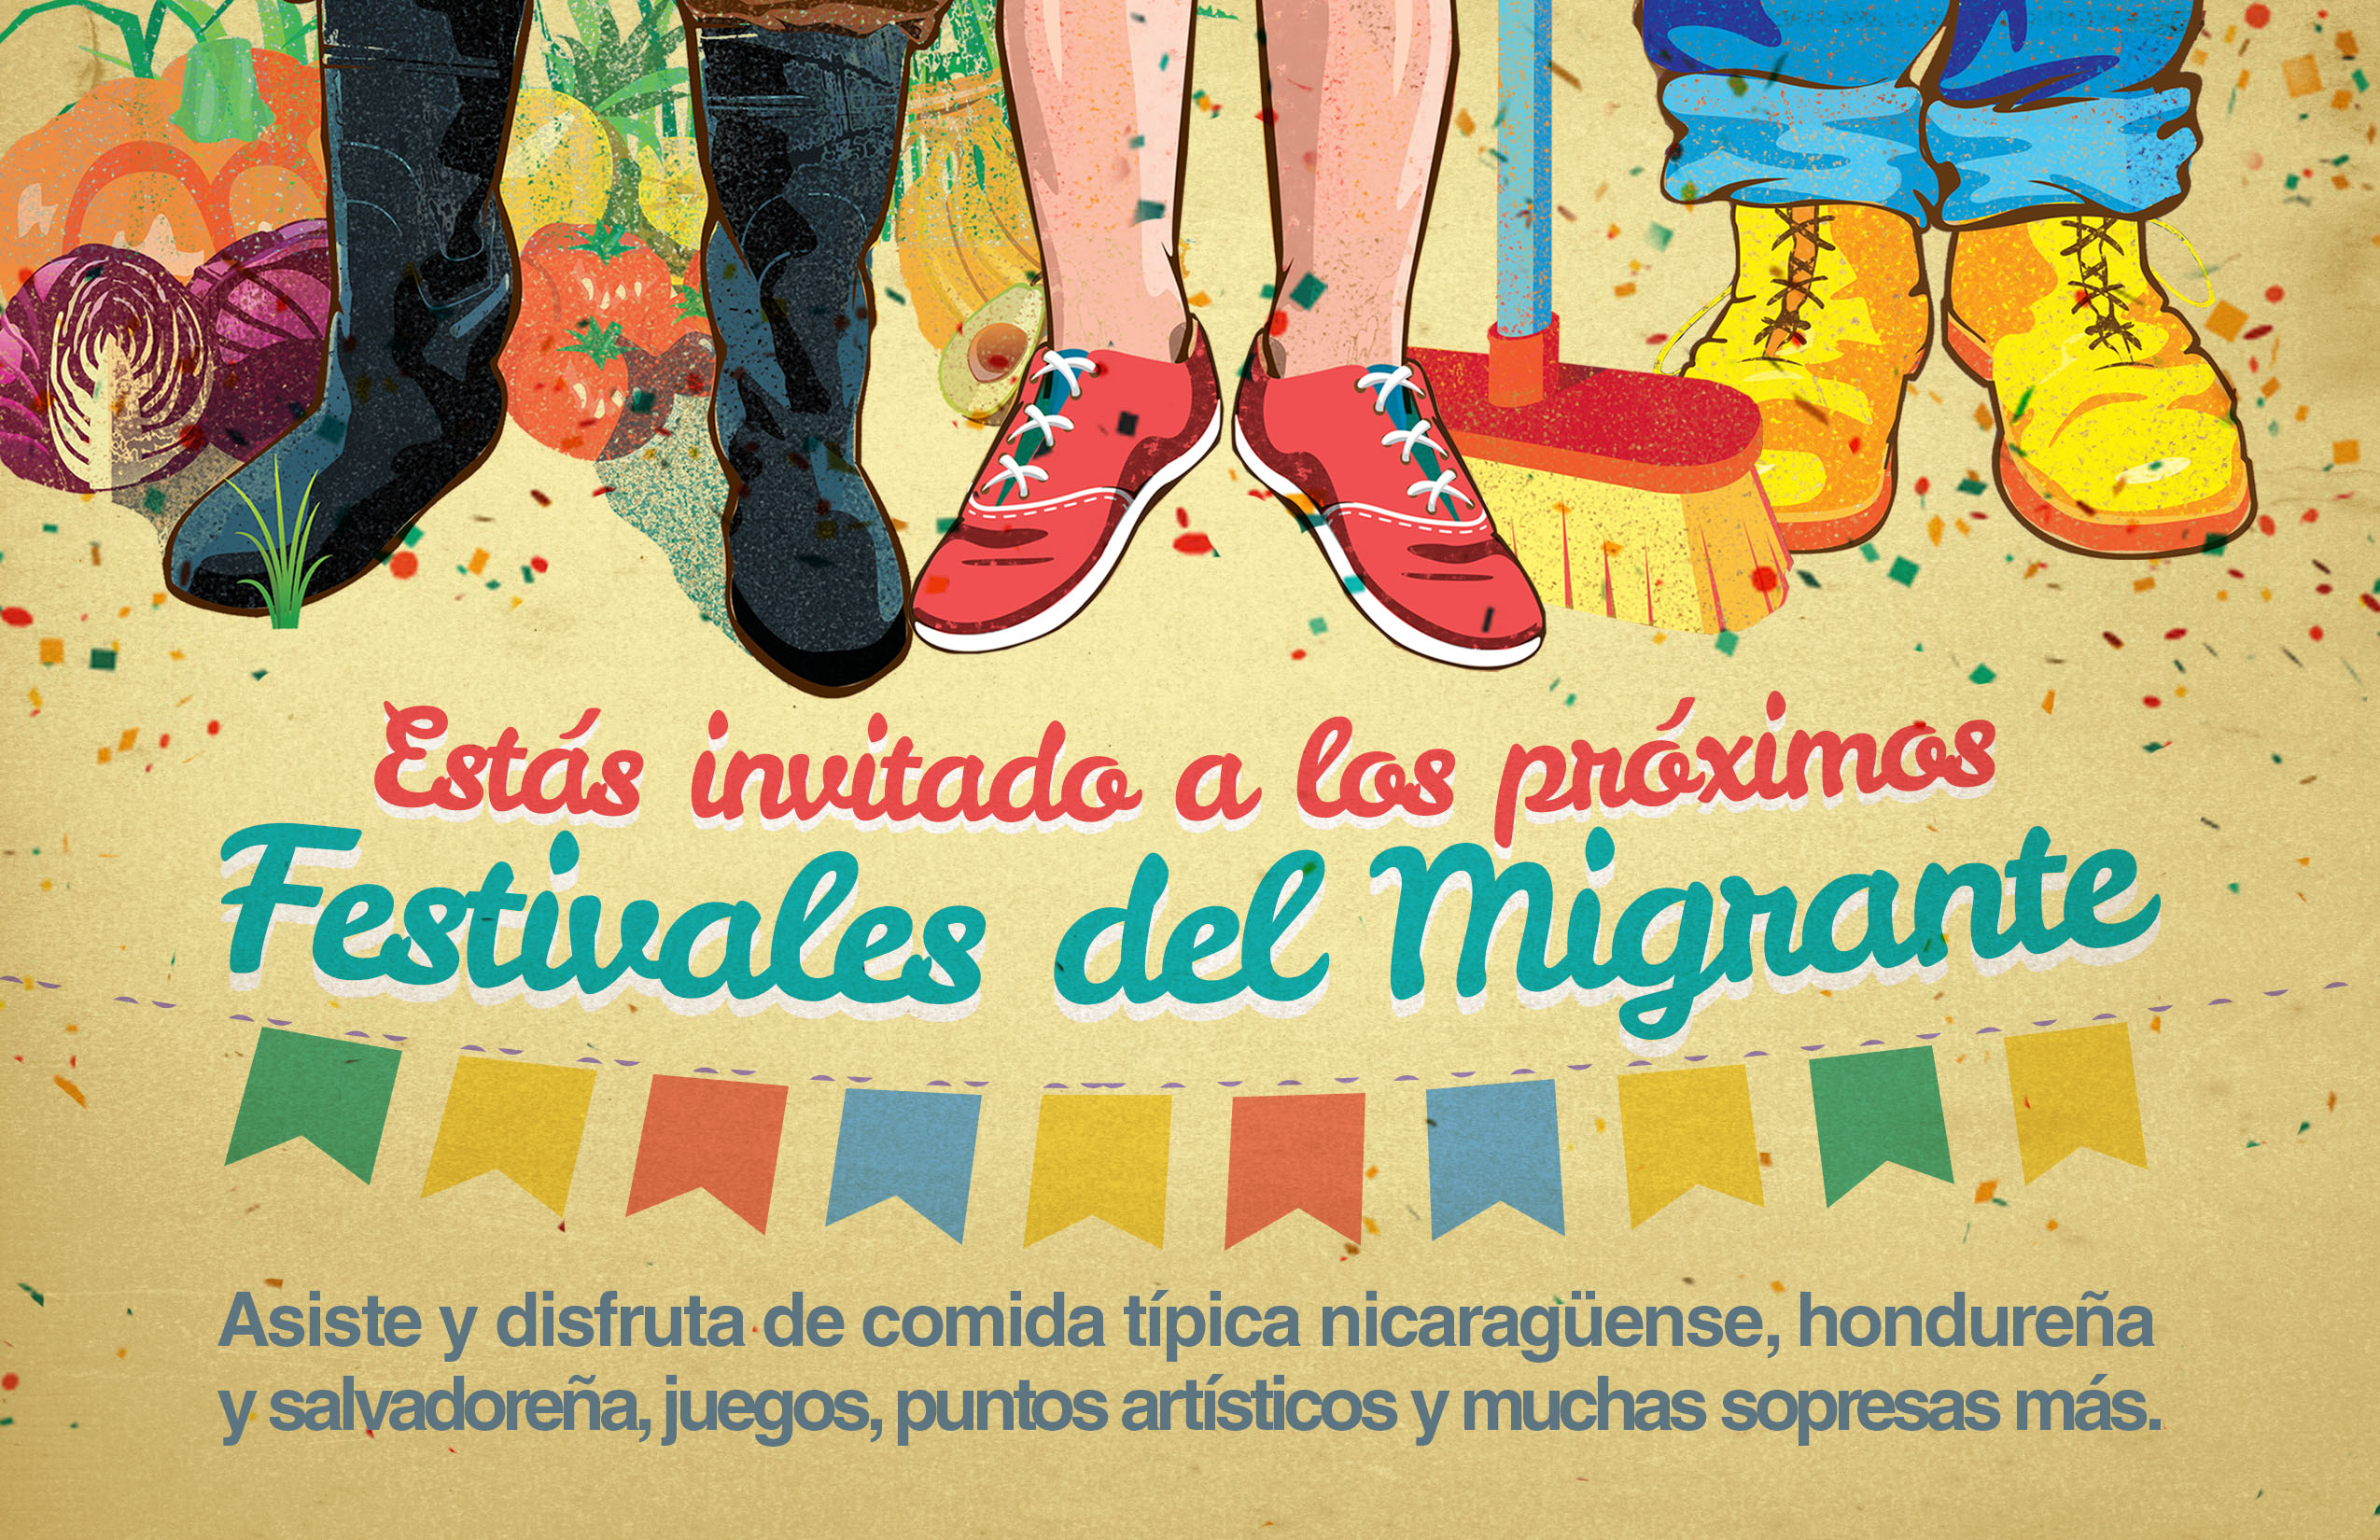 Festivales del Migrante